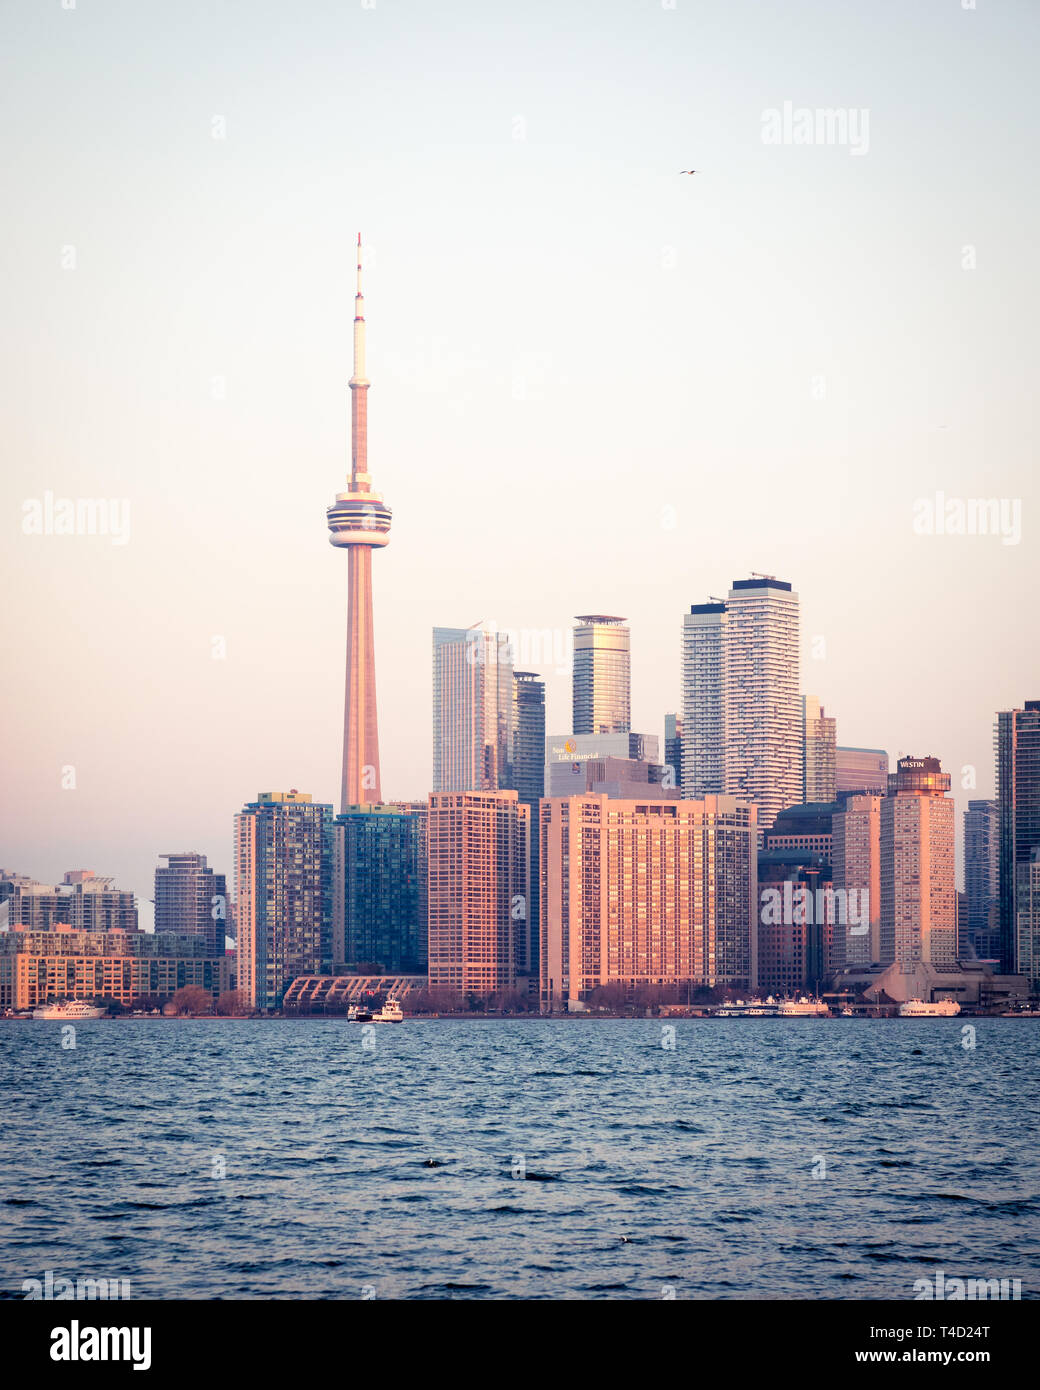 La CN Tower e spettacolare skyline di Toronto, Ontario, Canada, come si vede da Ward's Island (Toronto Islands) attraverso il lago Ontario. Foto Stock